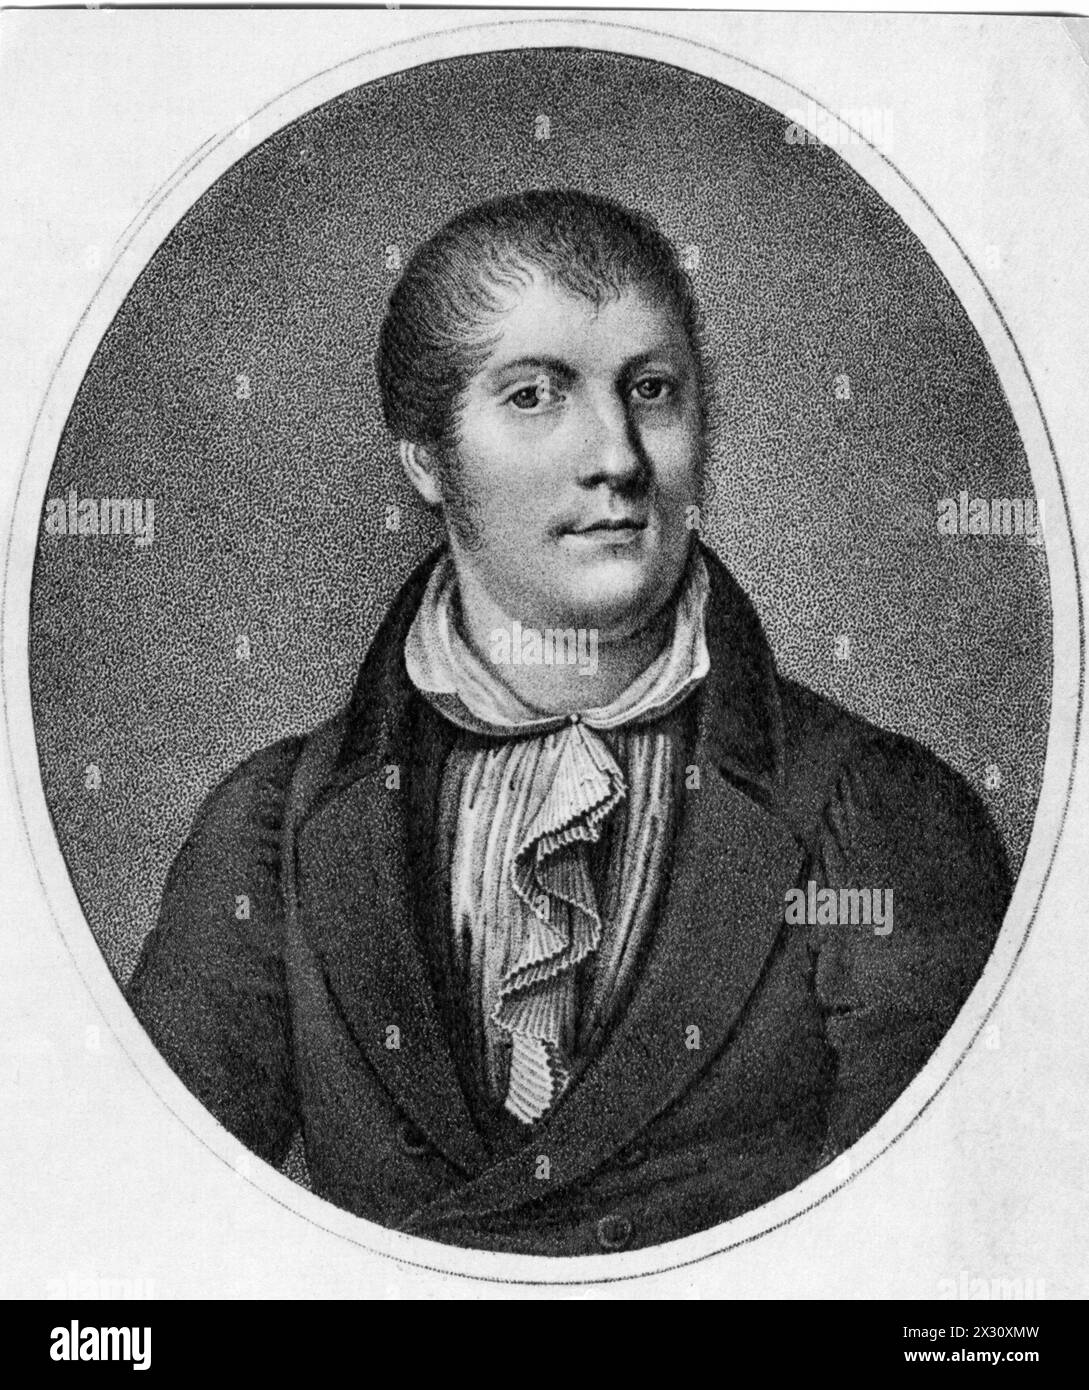 Spohr, Ludwig, 5.4.1784 - 22,10 1859, compositeur et chef d'orchestre allemand, après gravure sur acier, SUPPLÉMENT-DROITS-AUTORISATION-INFO-NOT-AVAILABLE Banque D'Images